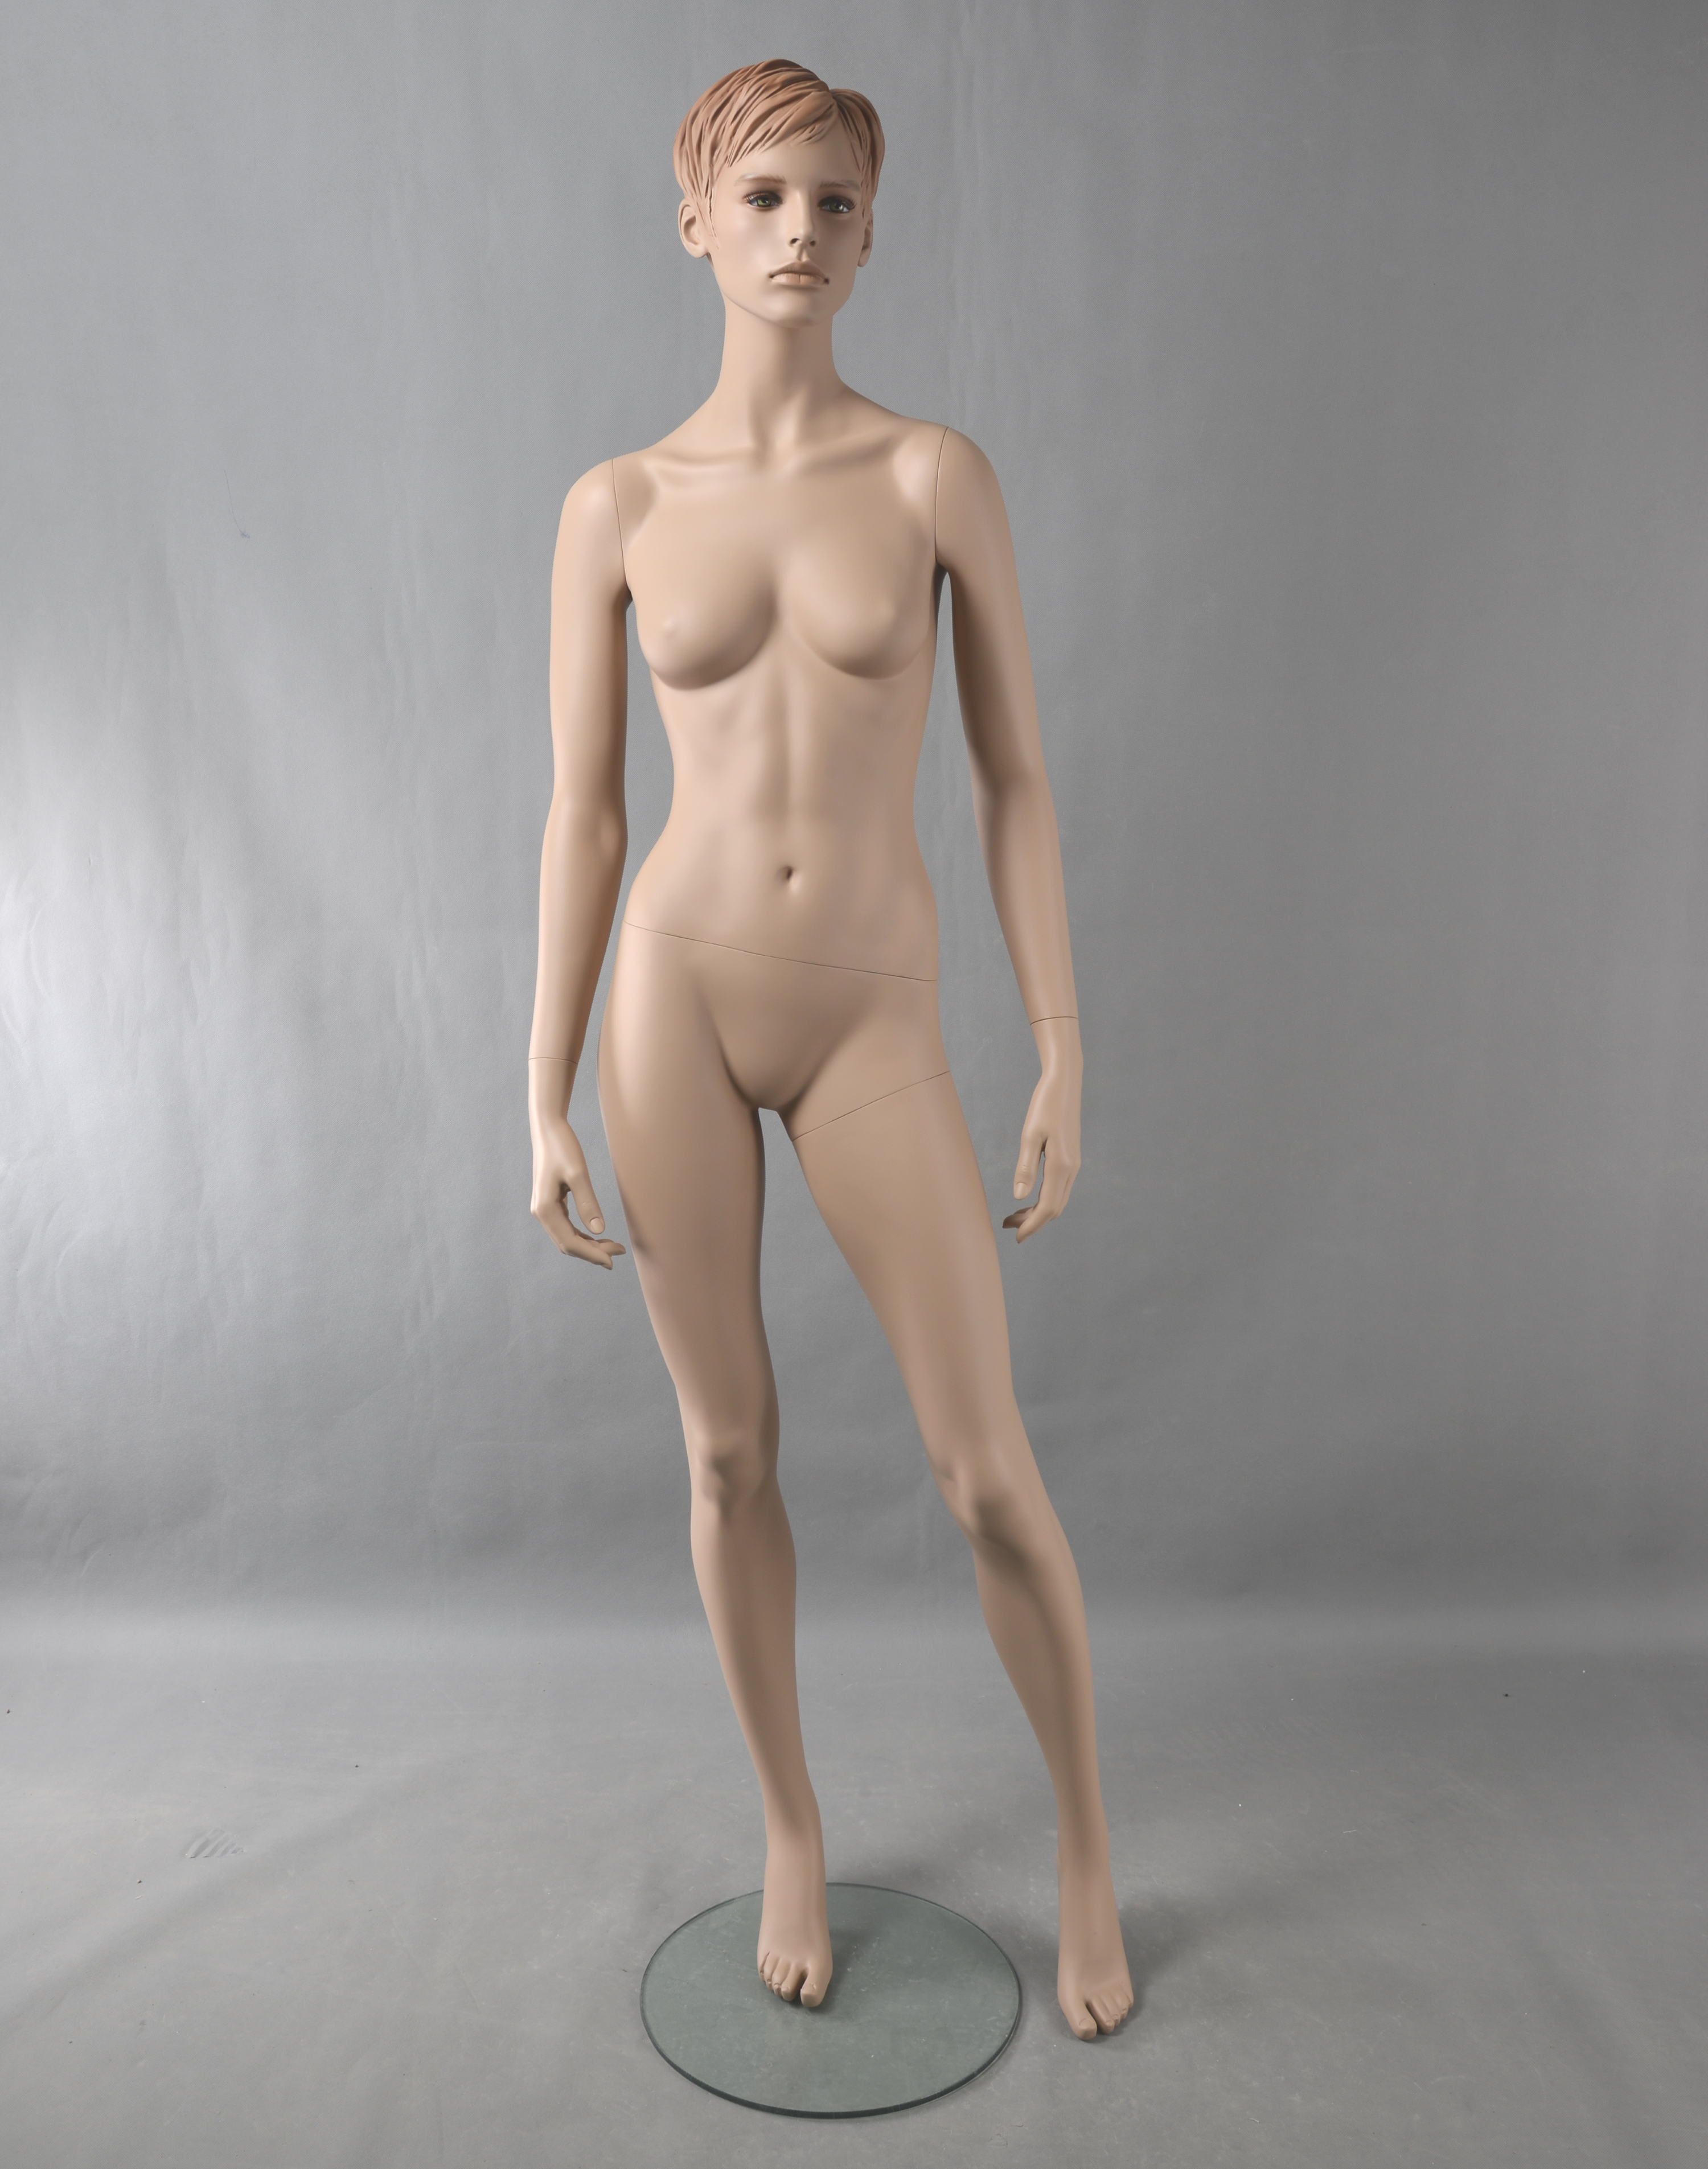 Schaufensterfigur Evo2 Dame "Bodysculpt"